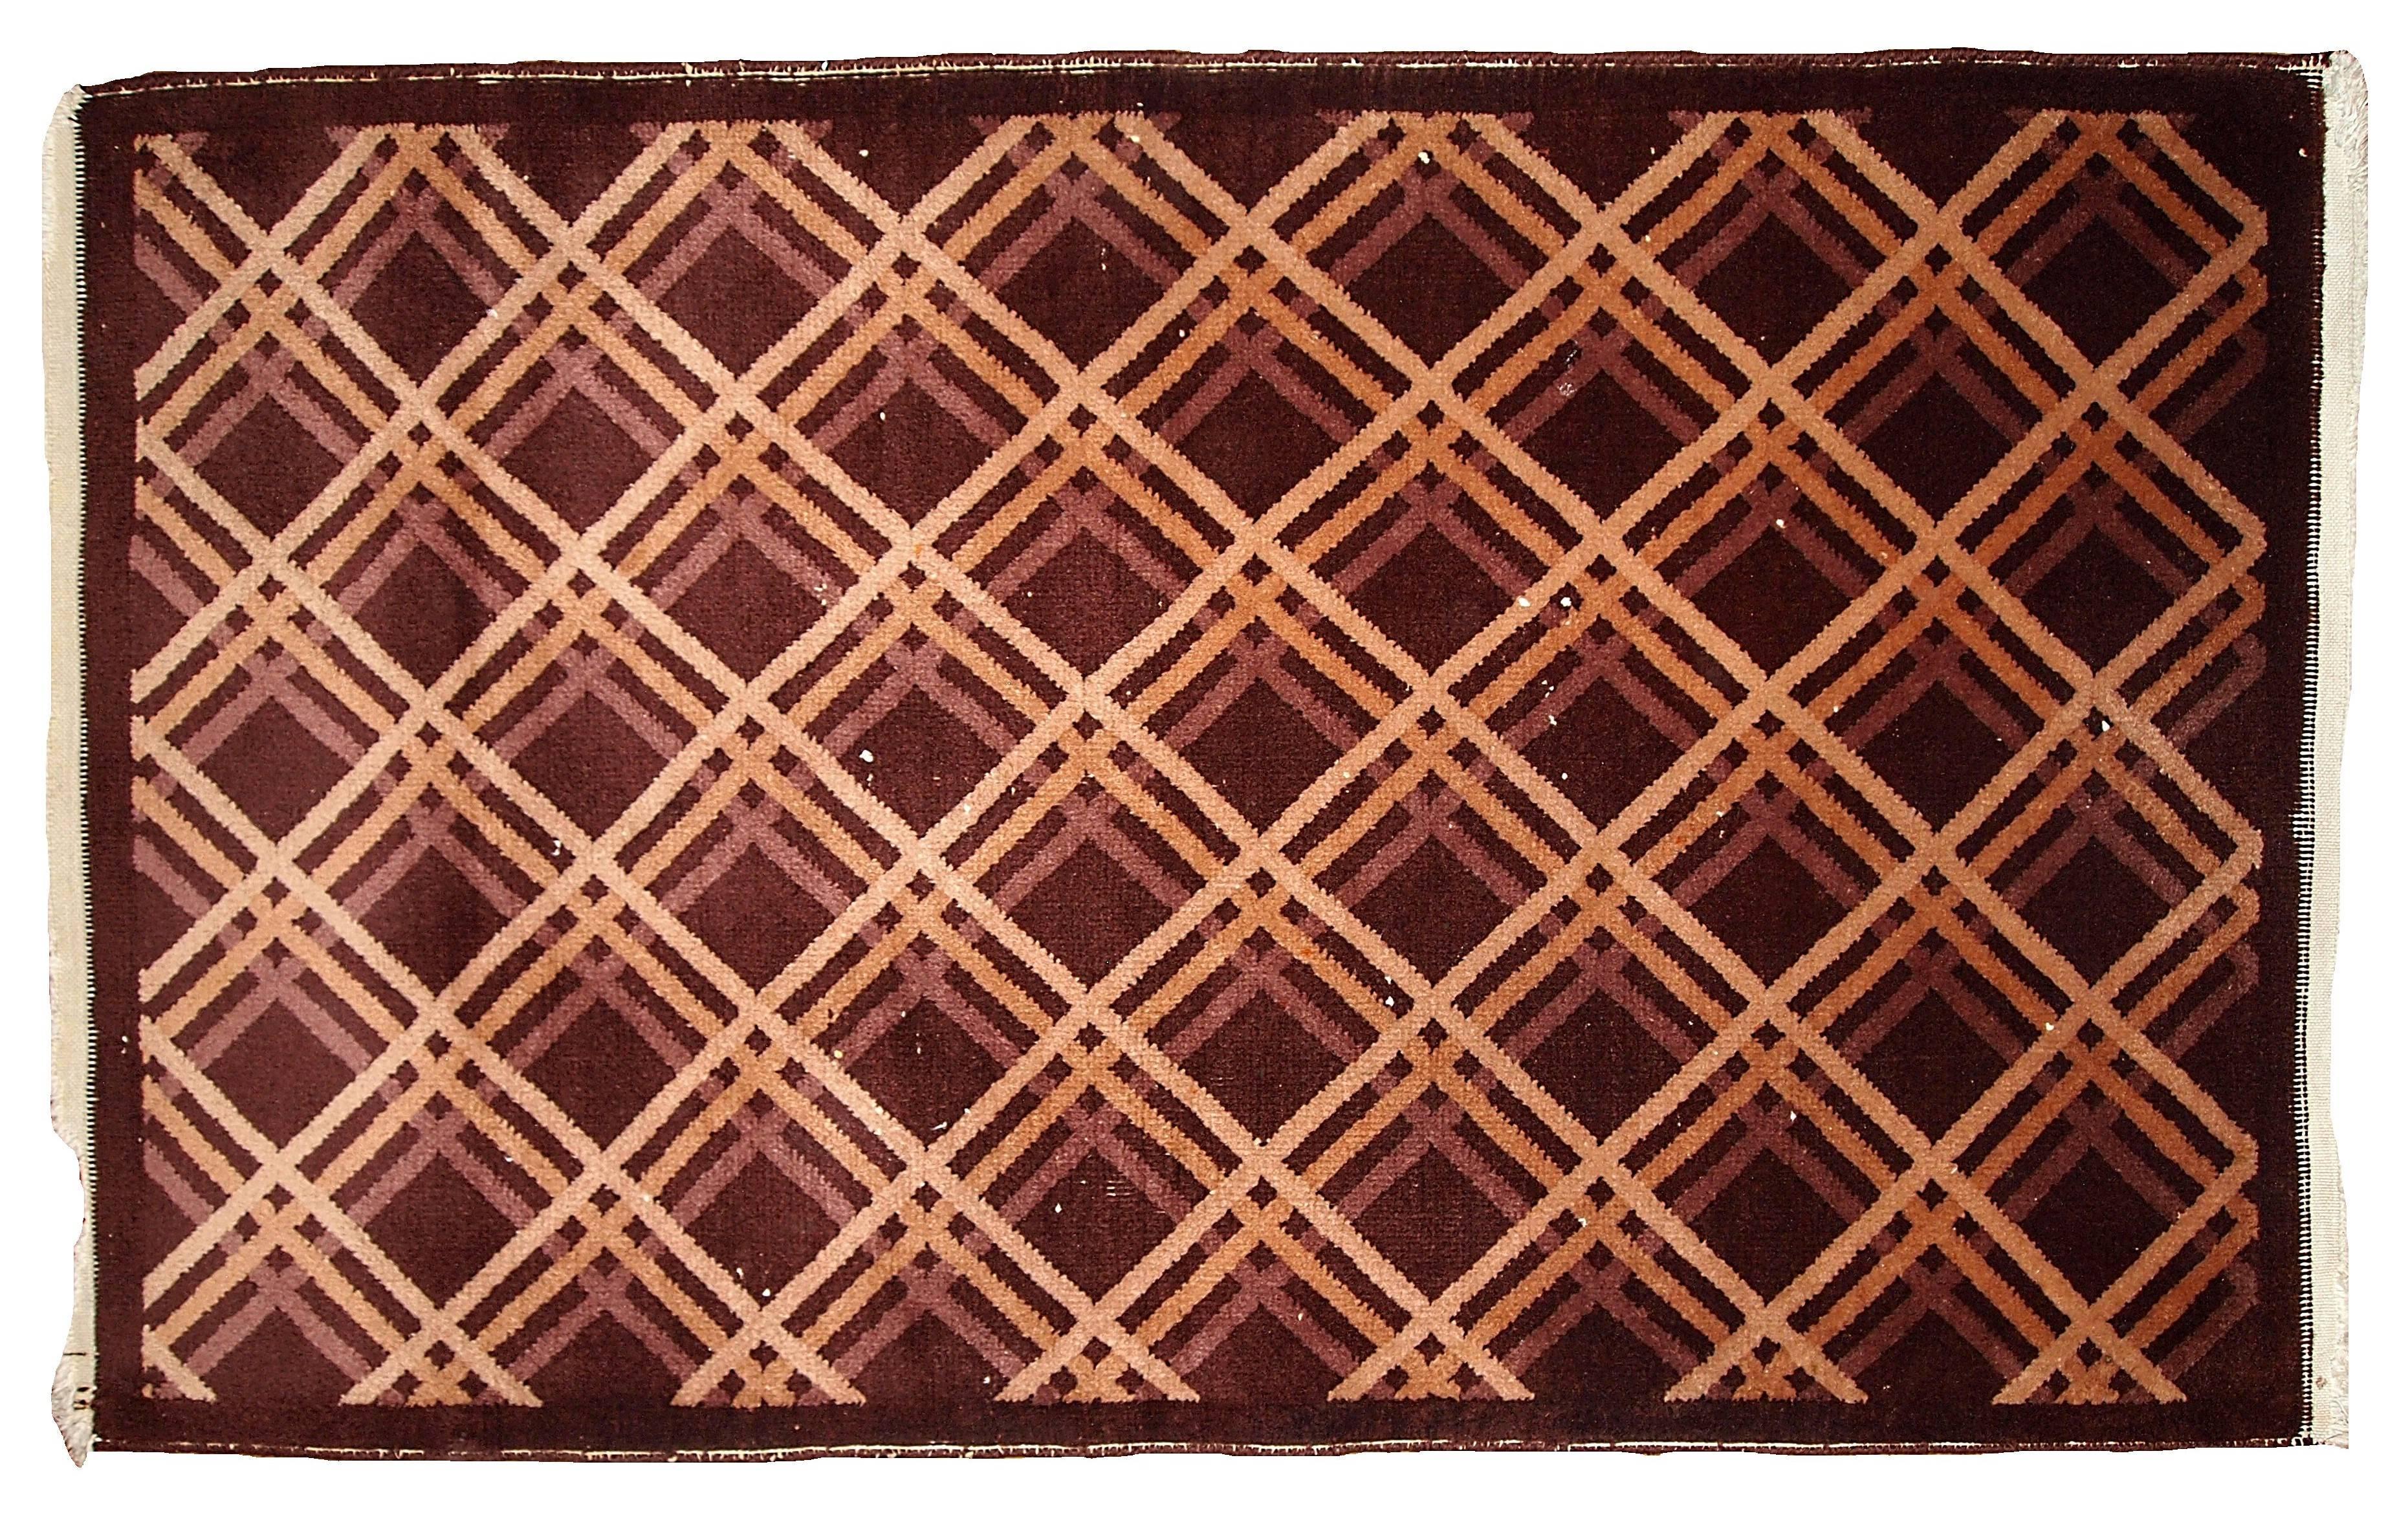 Antiker handgefertigter geometrischer Nichol-Chinesenteppich. Ein für die damalige Zeit sehr ungewöhnliches Design, das heute jedoch sehr modern und modisch ist. Es gibt nicht so viele geometrische Chinesen der 1920er Jahre zu finden, was diesen